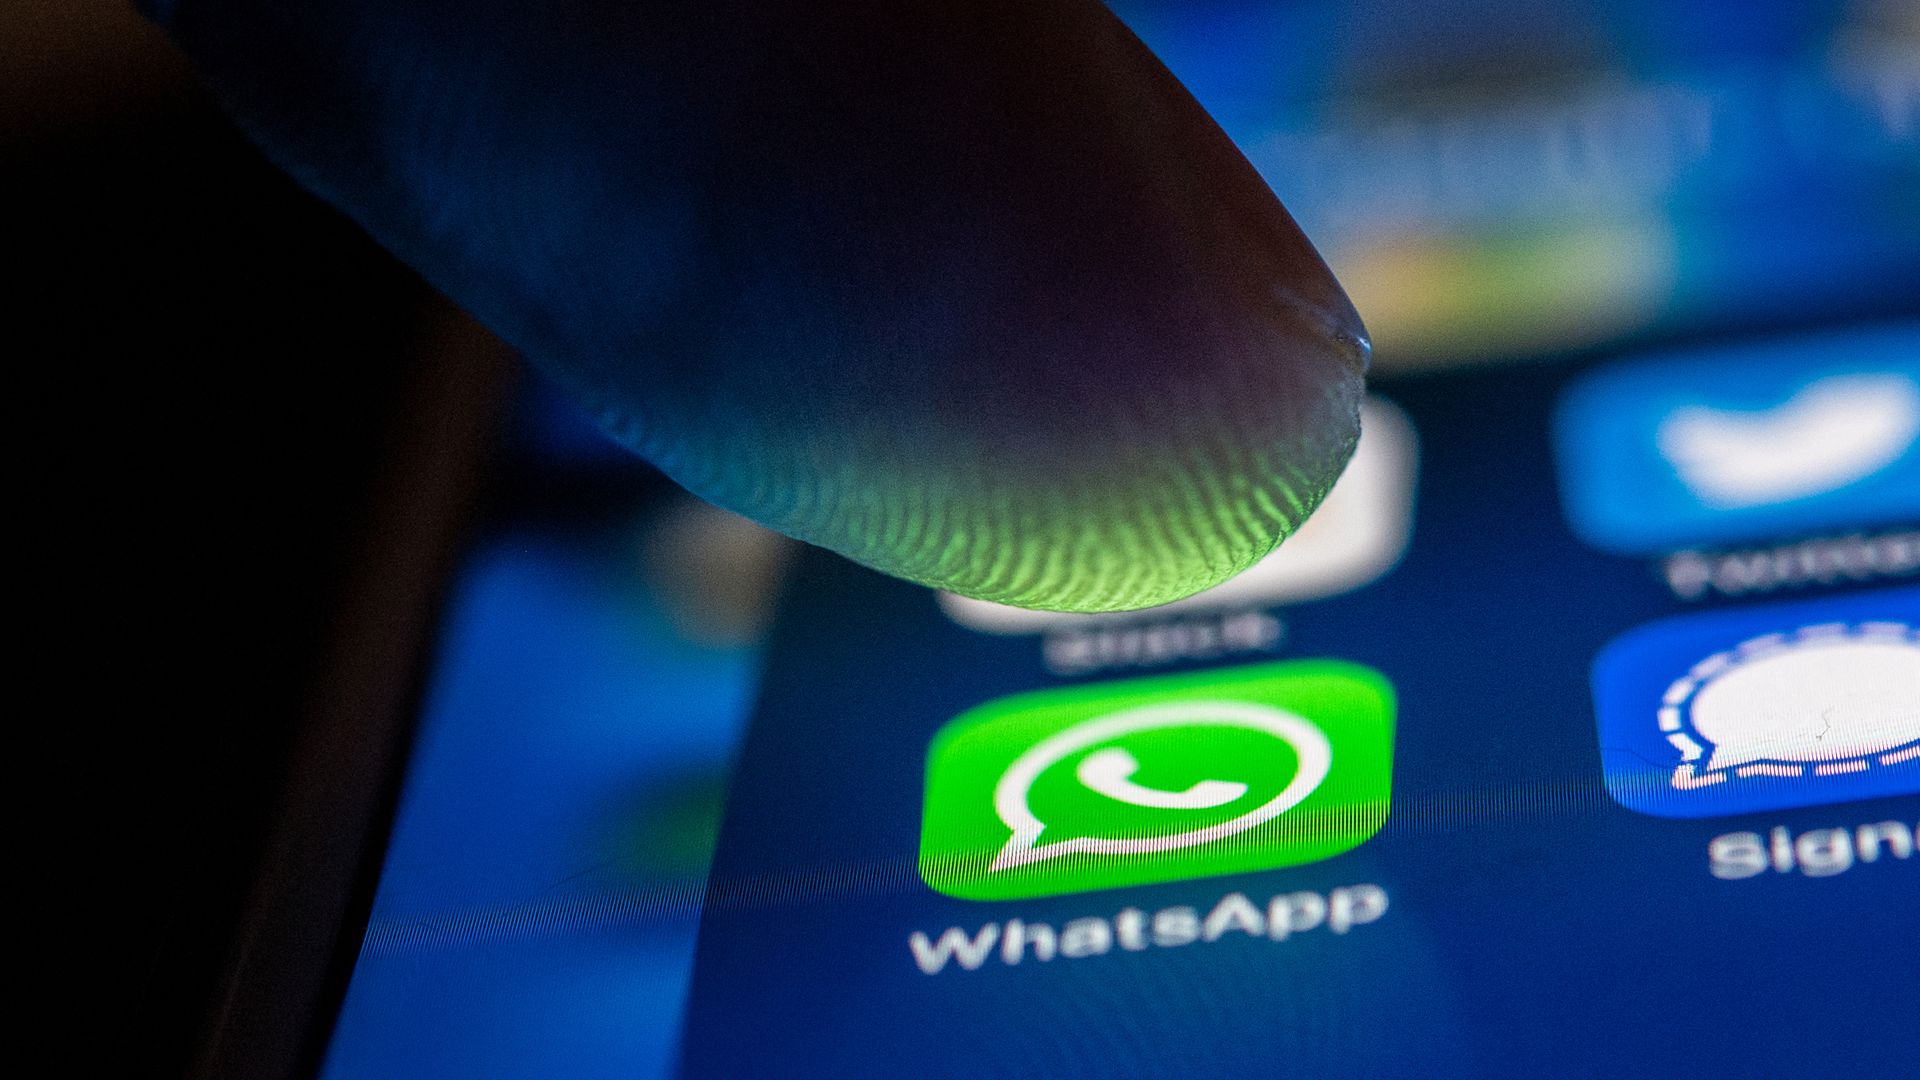 Zum Themendienst-Bericht vom 31. Mai 2022: Bei Whatsapp treiben wieder Betrüger ihr Unwesen. Dieses Mal besonders perfide: Mit nur einem Anruf können sie das Konto ihrer Opfer kapern.